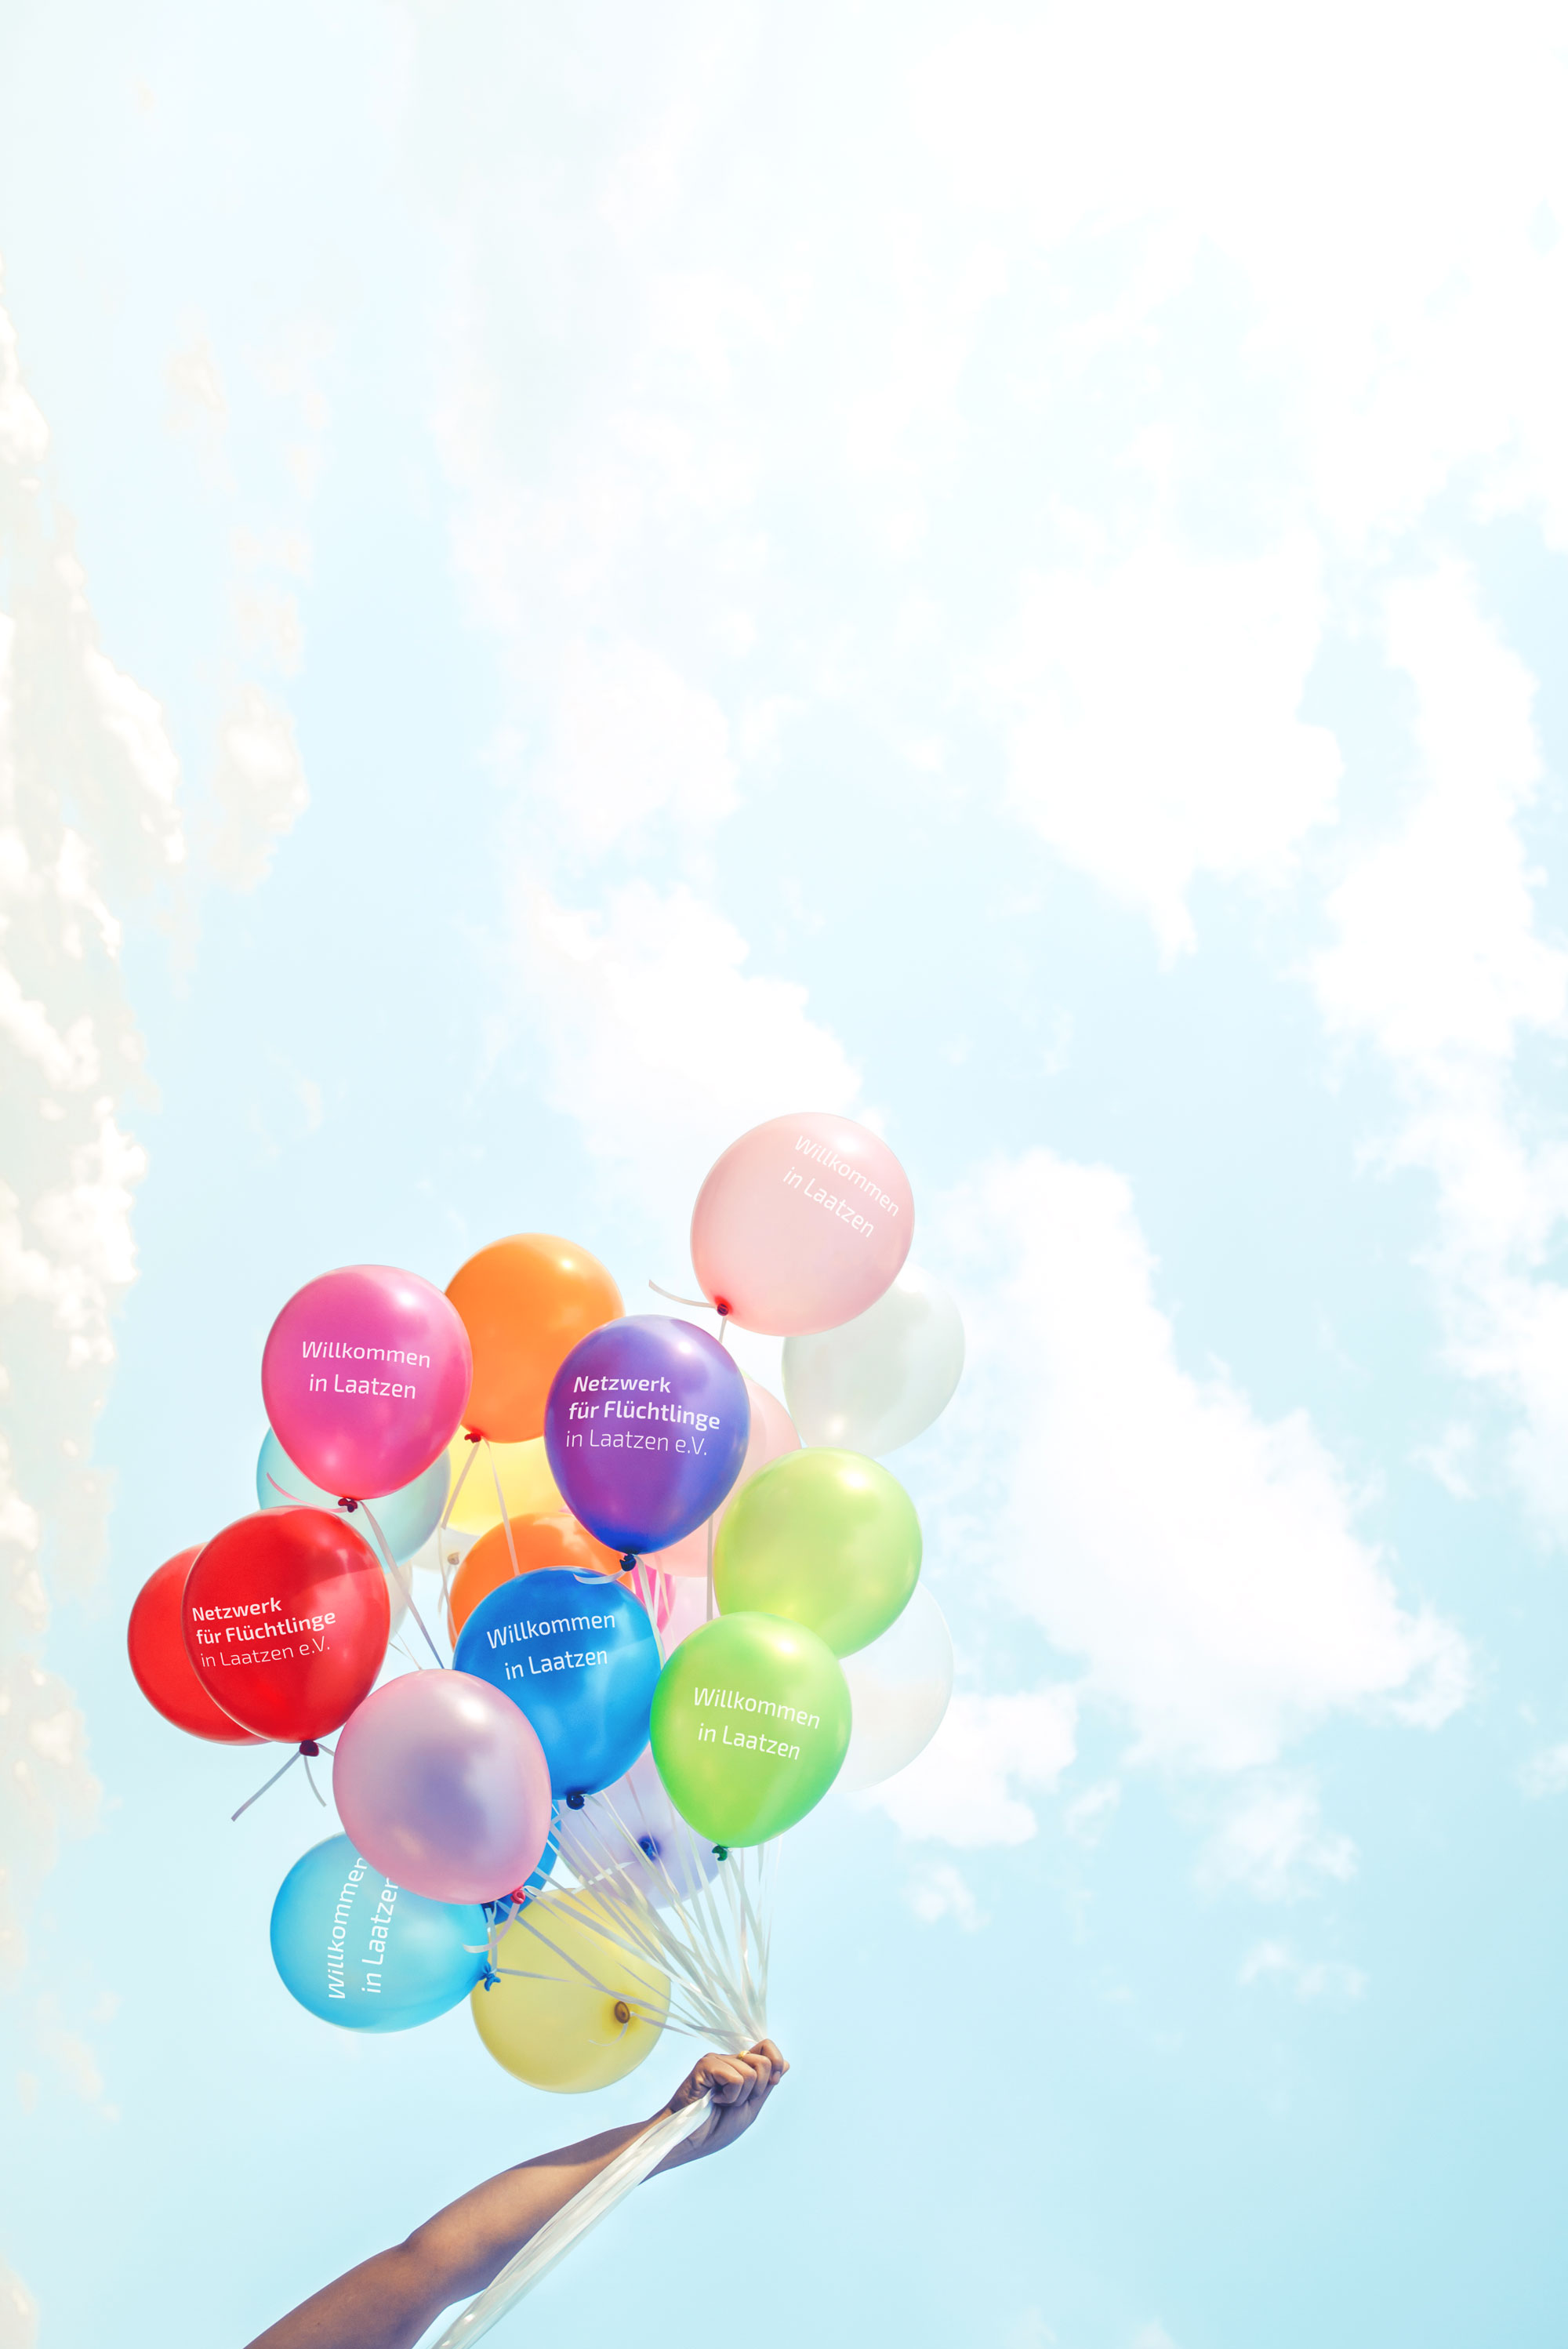 Farbige Luftballons fliegen in die Luft. Auf den Luftballons steht 'Netzwerk für Flüchtlinge in Laatzen e.V.'